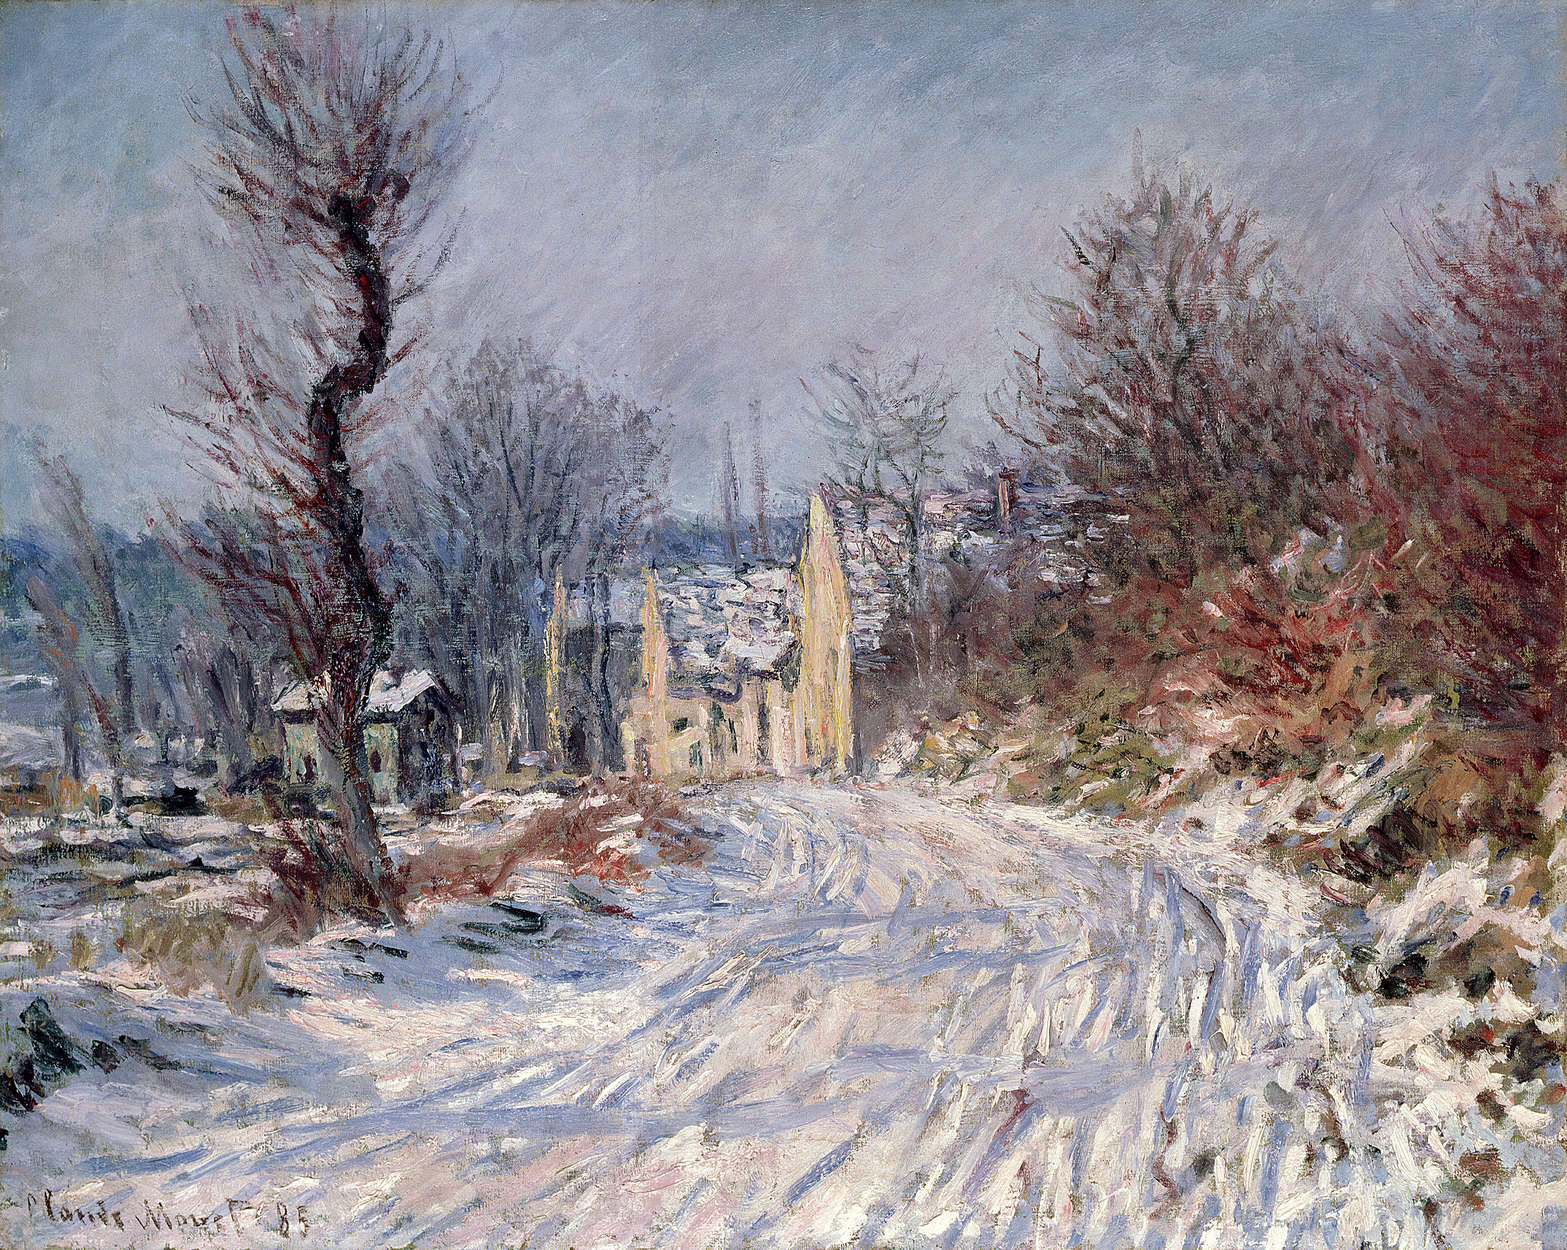             Muurschildering "De weg naar Giverny" van Claude Monet
        